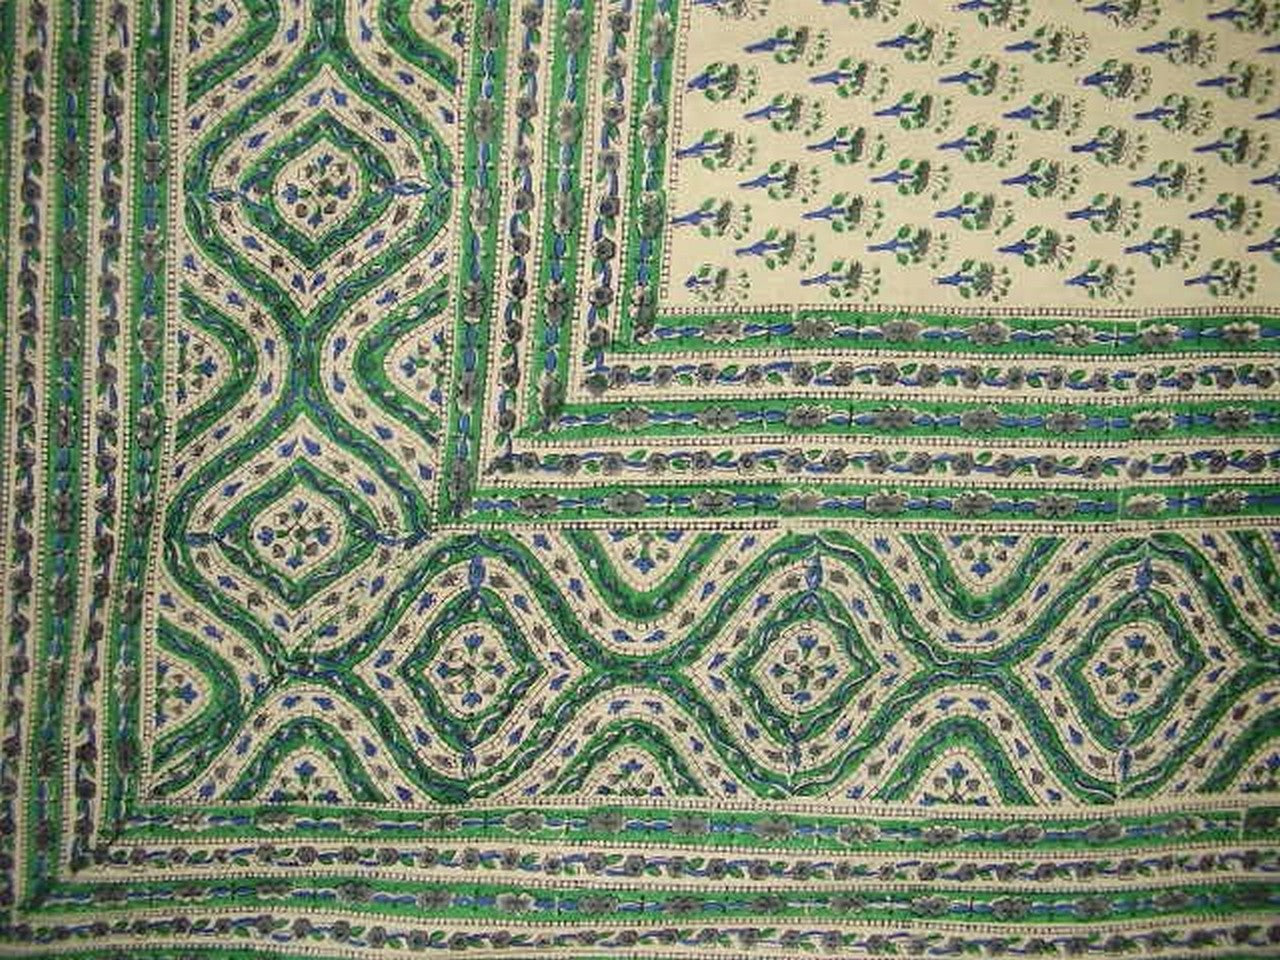 Katoenen sprei met blokprint, Indiaas tapijt, 108 x 88 inch, volledig koningingroen